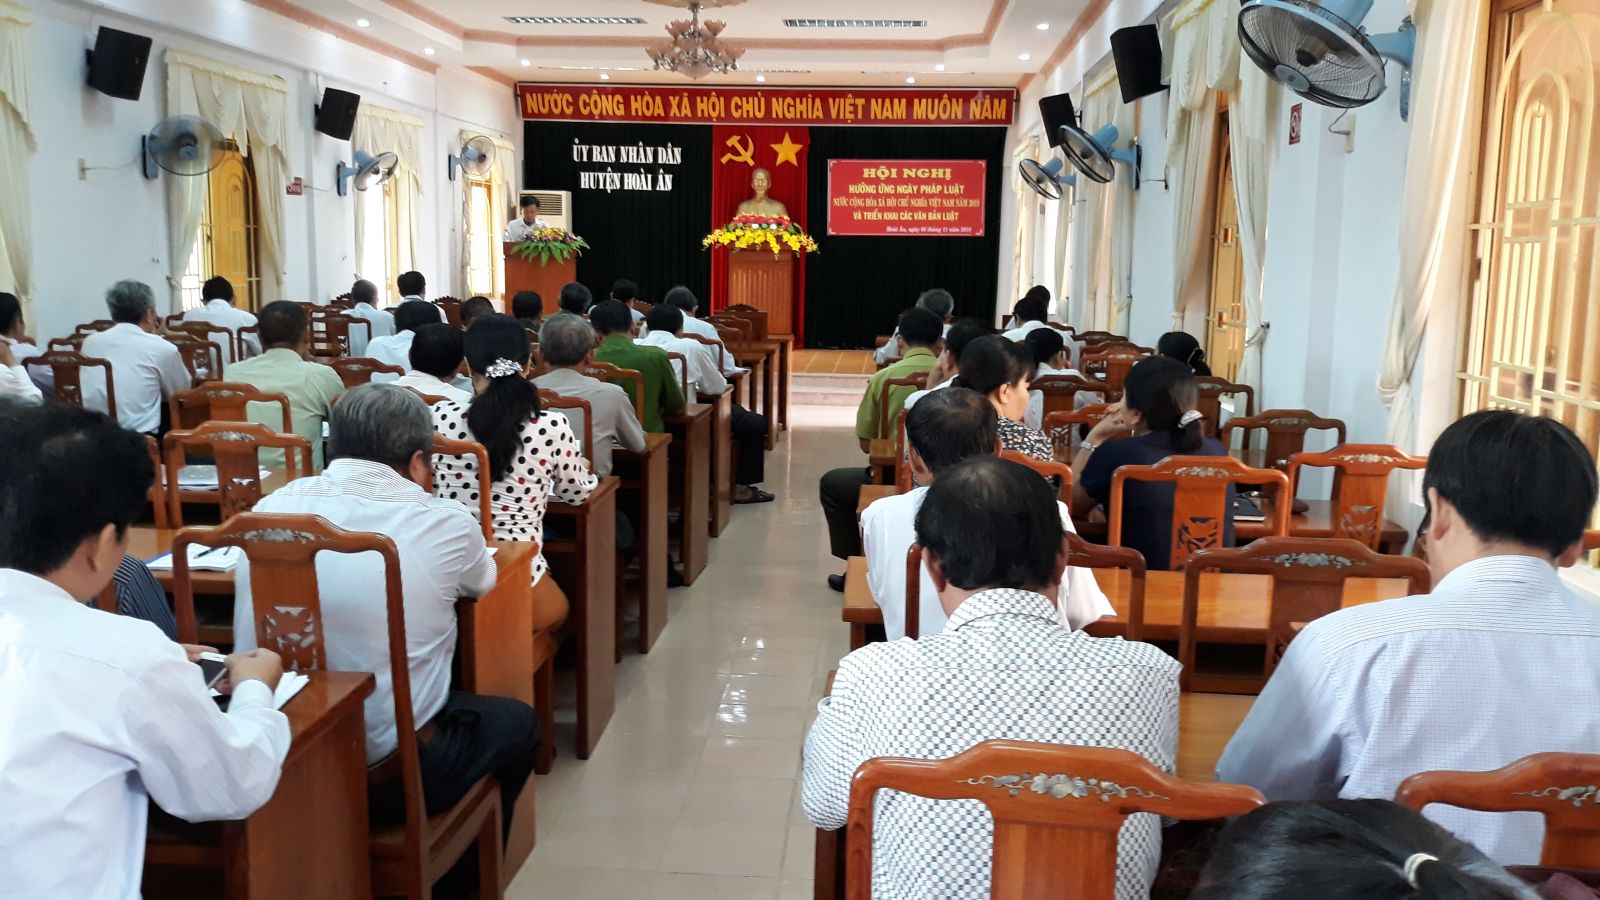 Hoài Ân: Hội nghị hưởng ứng Ngày Pháp luật nước Cộng hòa xã hội chủ nghĩa Việt Nam và triển khai các văn bản luật